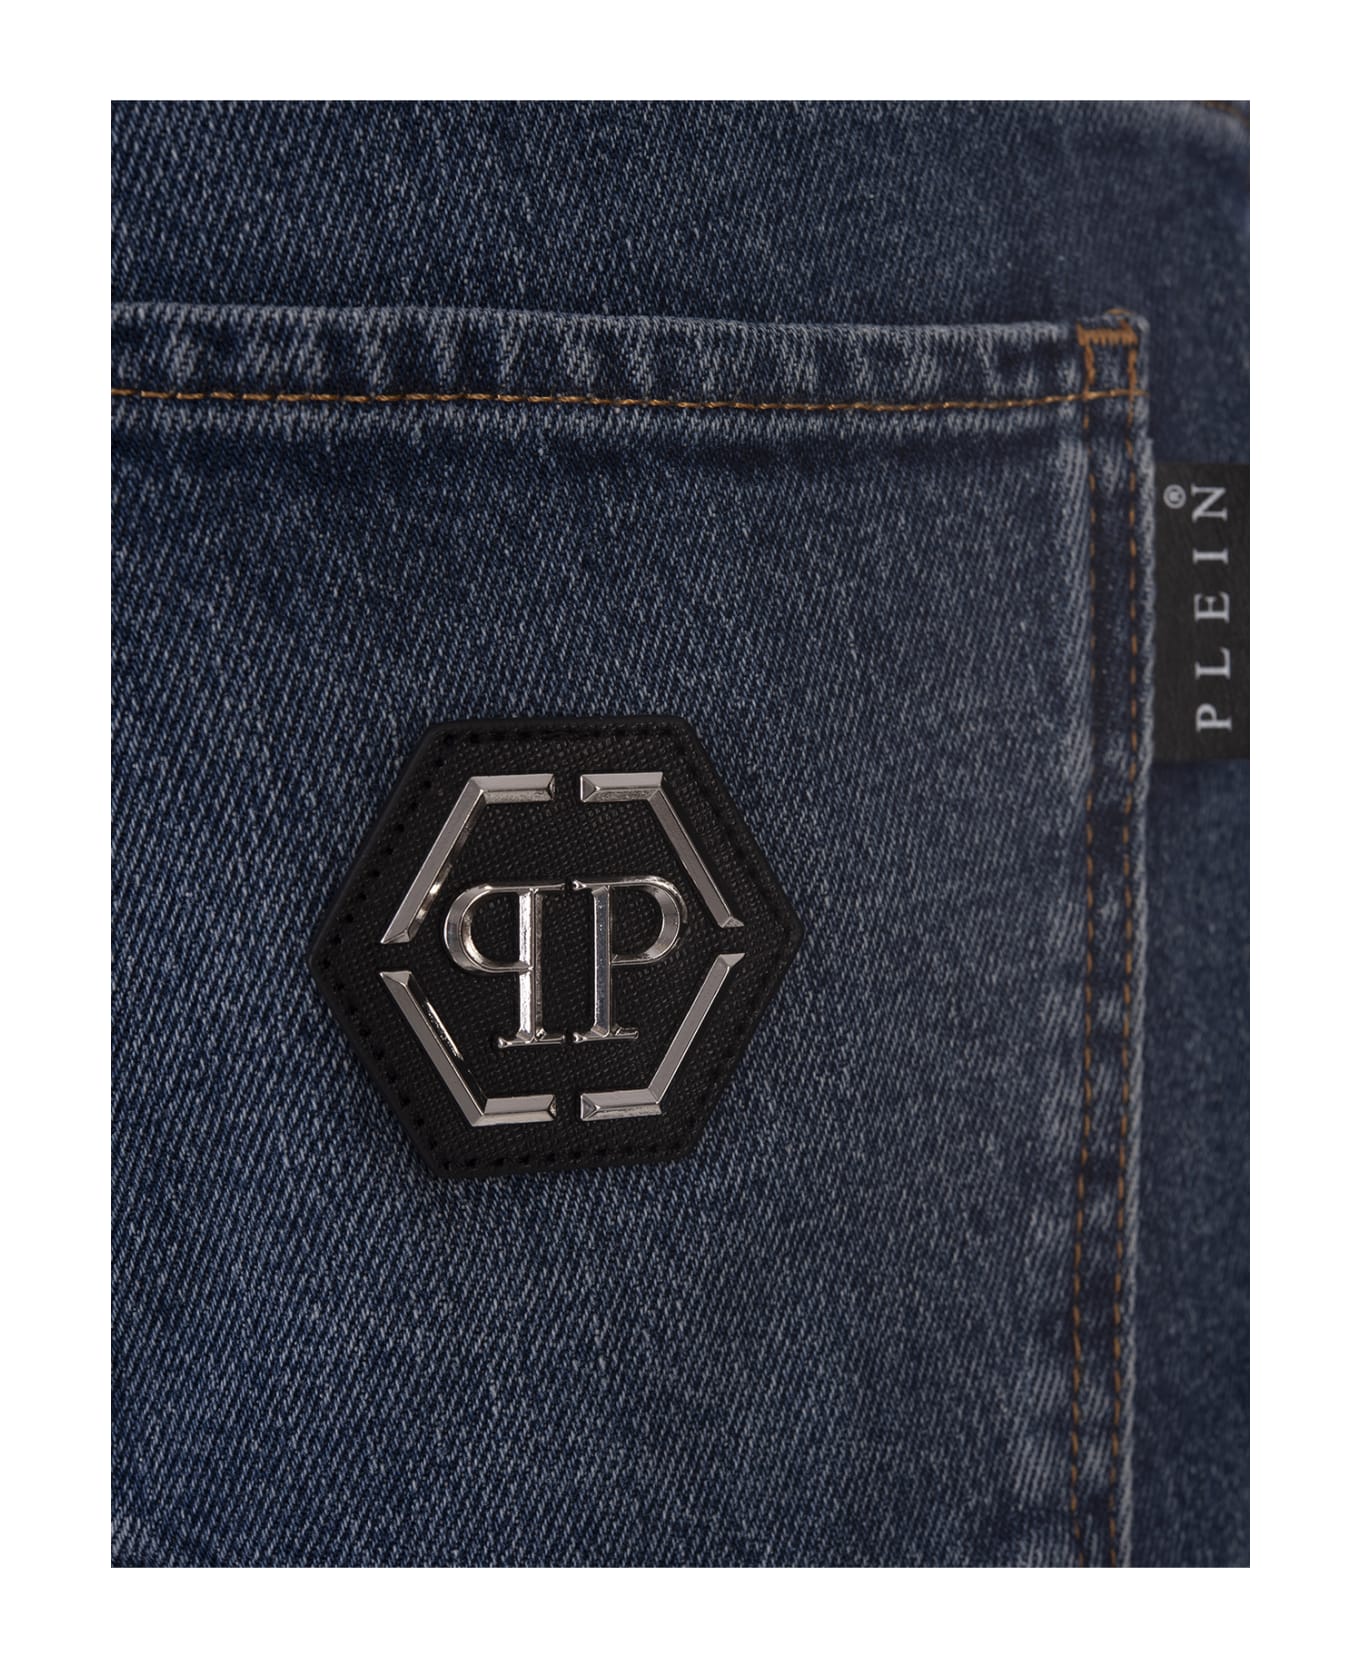 Philipp Plein Denim Trousers Super Straight Cut Premium - Blue デニム